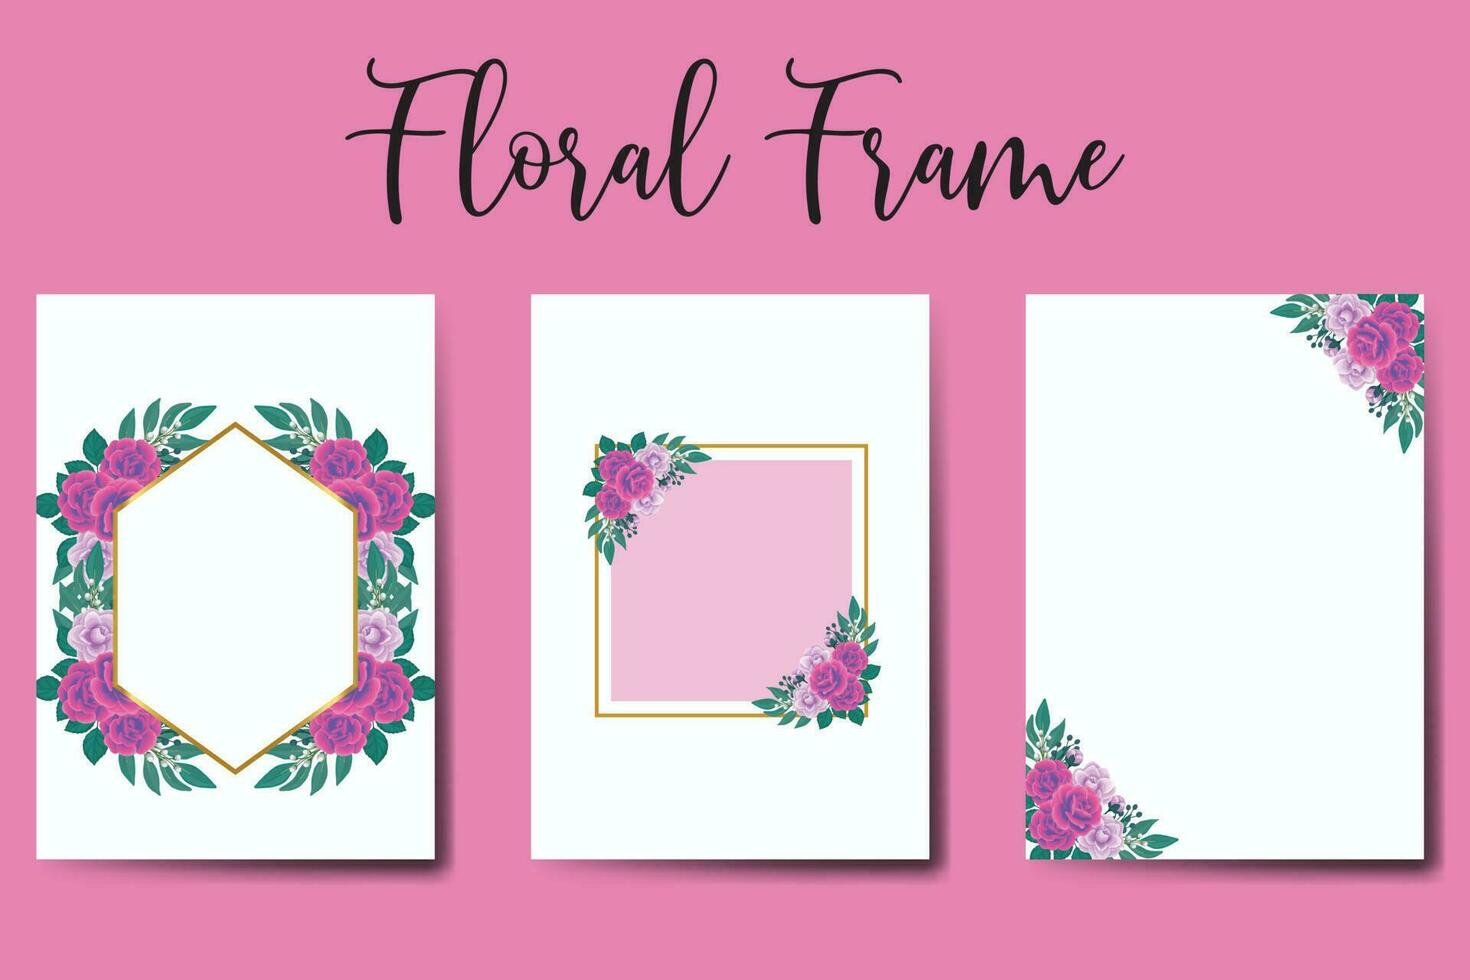 Boda invitación marco colocar, floral acuarela digital mano dibujado púrpura anémona flor diseño invitación tarjeta modelo vector